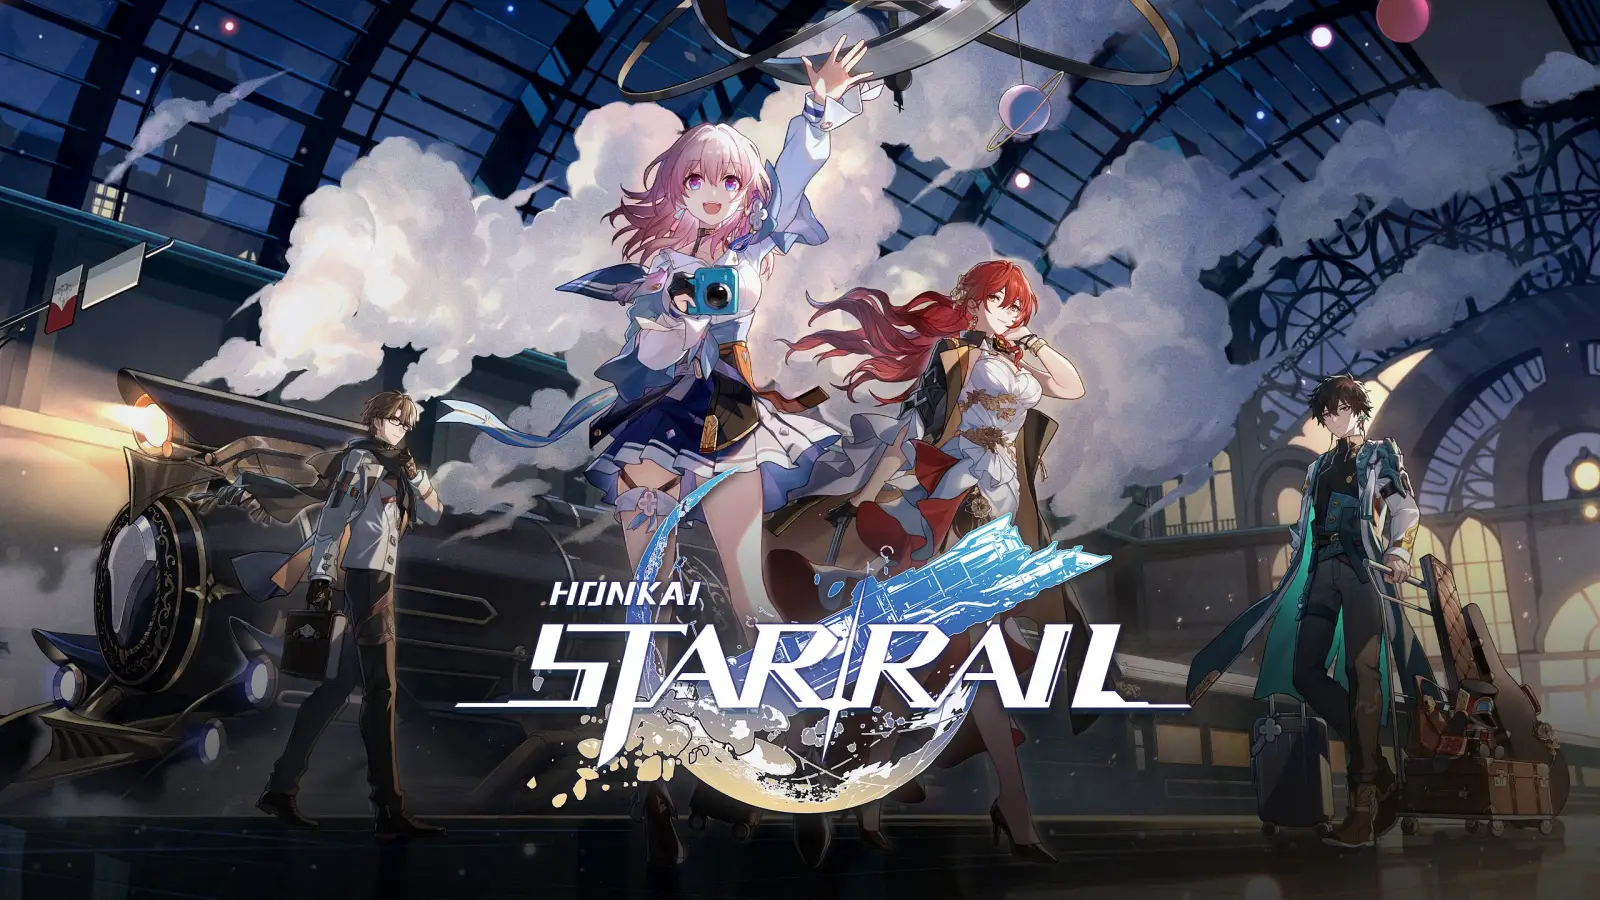 Imagen del juego Honkai Star Rail que muestra personajes en una estación de tren. Visual de anime. Son dos chicas en el frente y dos personajes masculinos en el fondo.